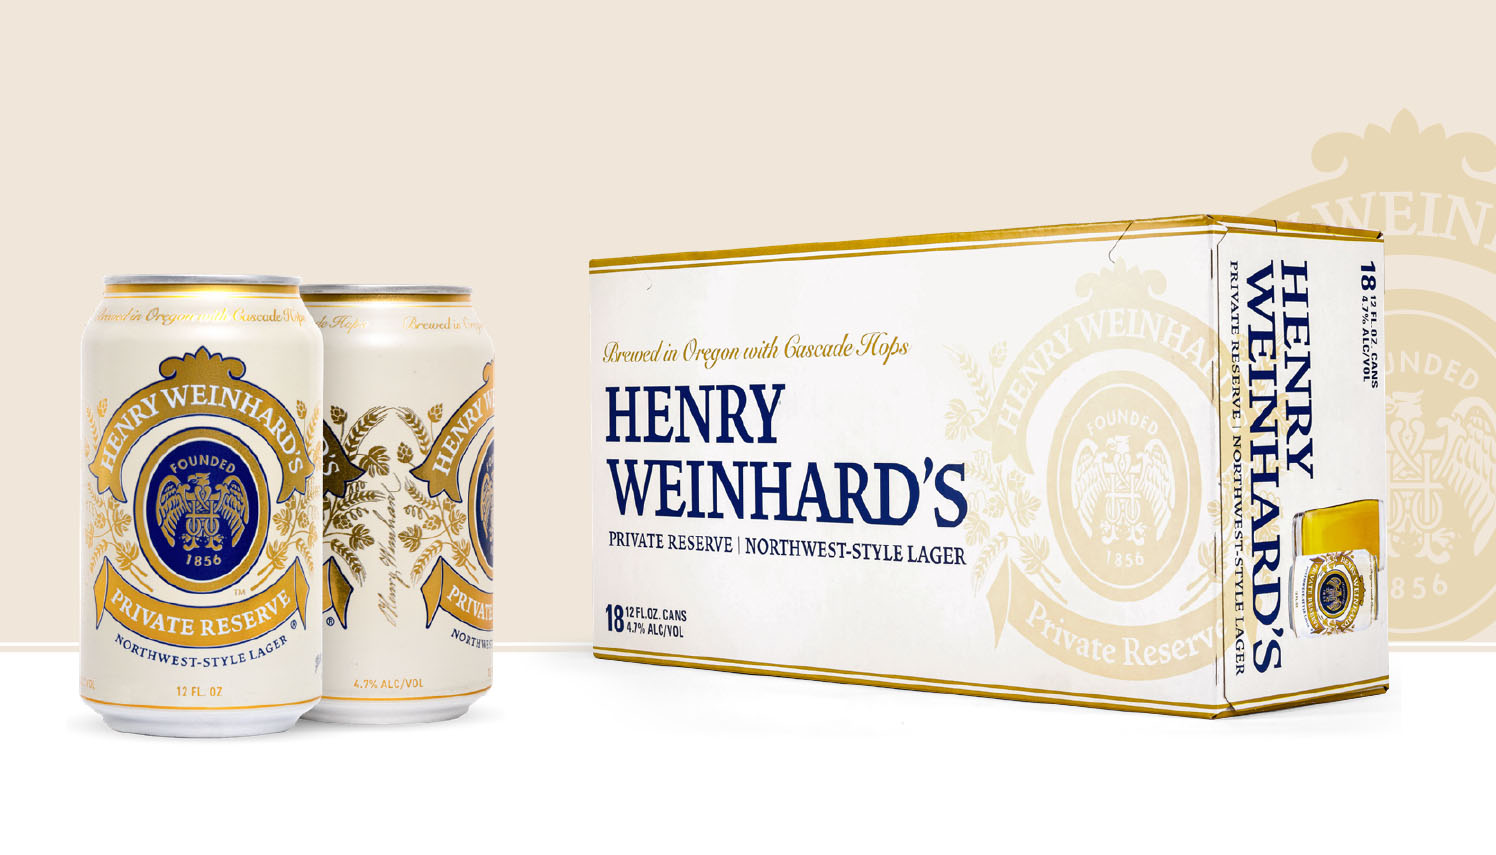 Henry Weinhard's packaging